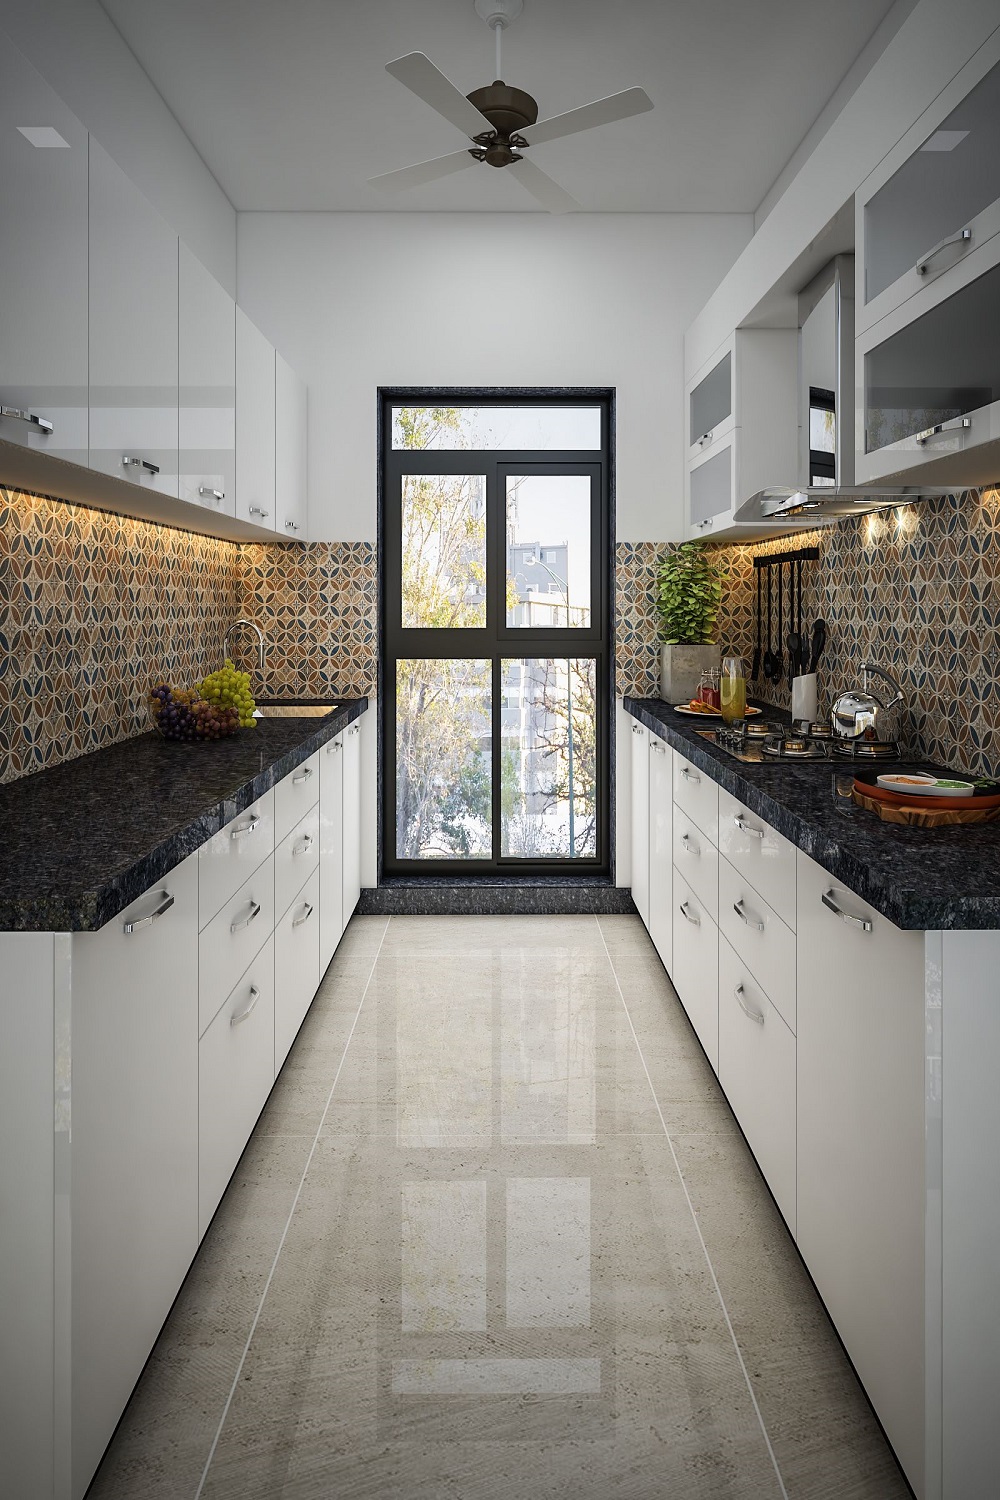 Modular Kitchen Design for parallel kitchen layout